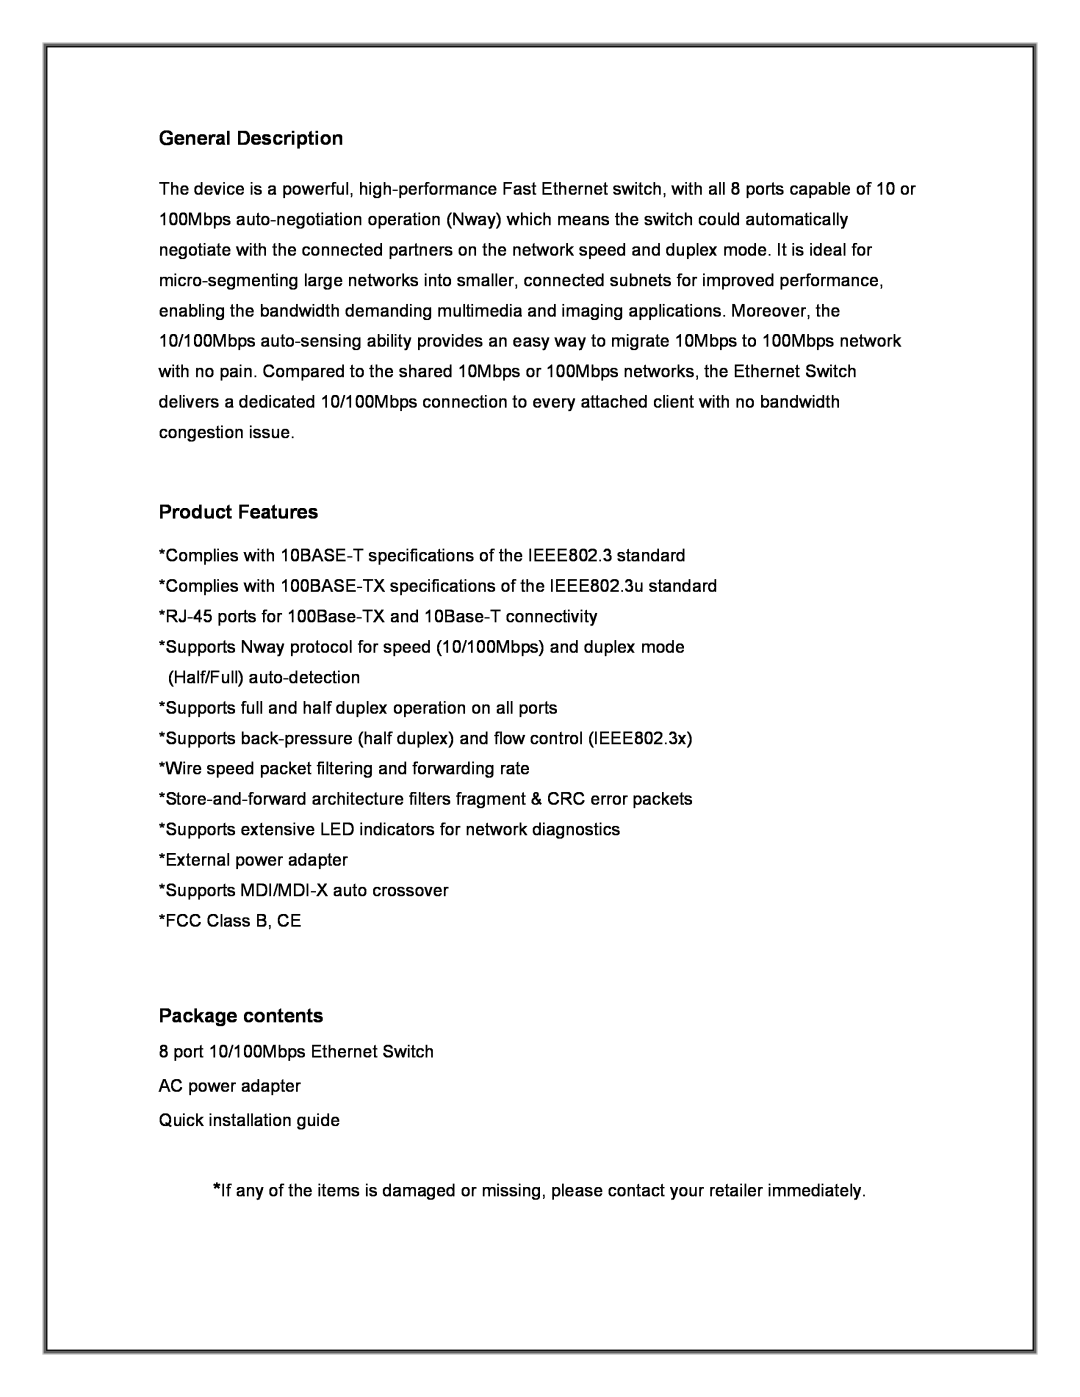 Advantek Networks ANS-08P manual General Description, Product Features, Package contents 